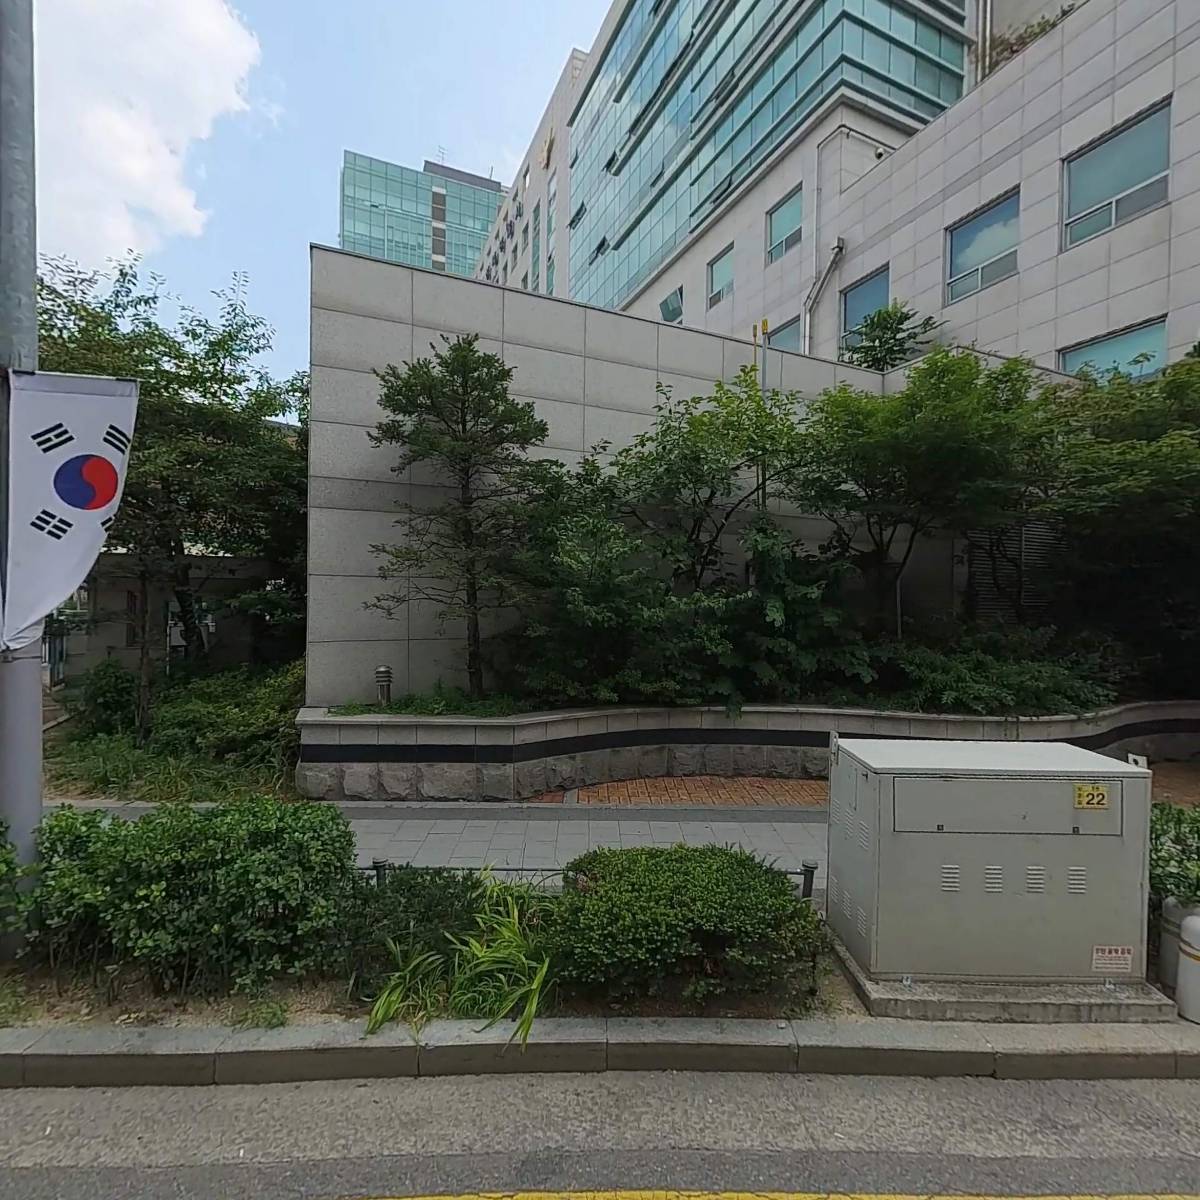 서울성북경찰서